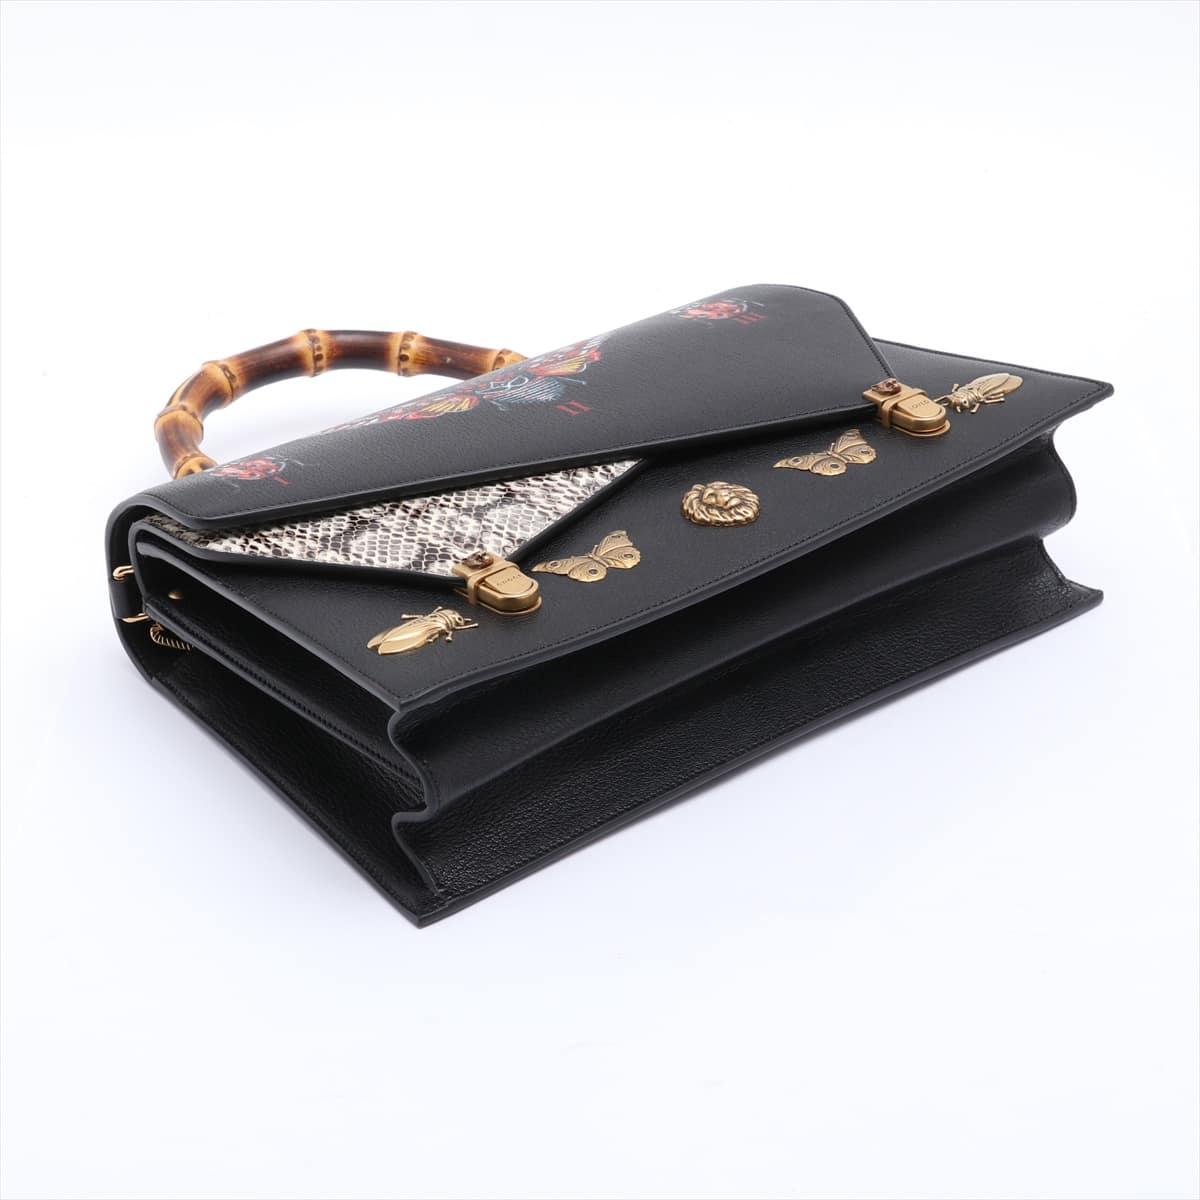 Gucci Bamboo Ottilia Leather Chain handbag Black 488712